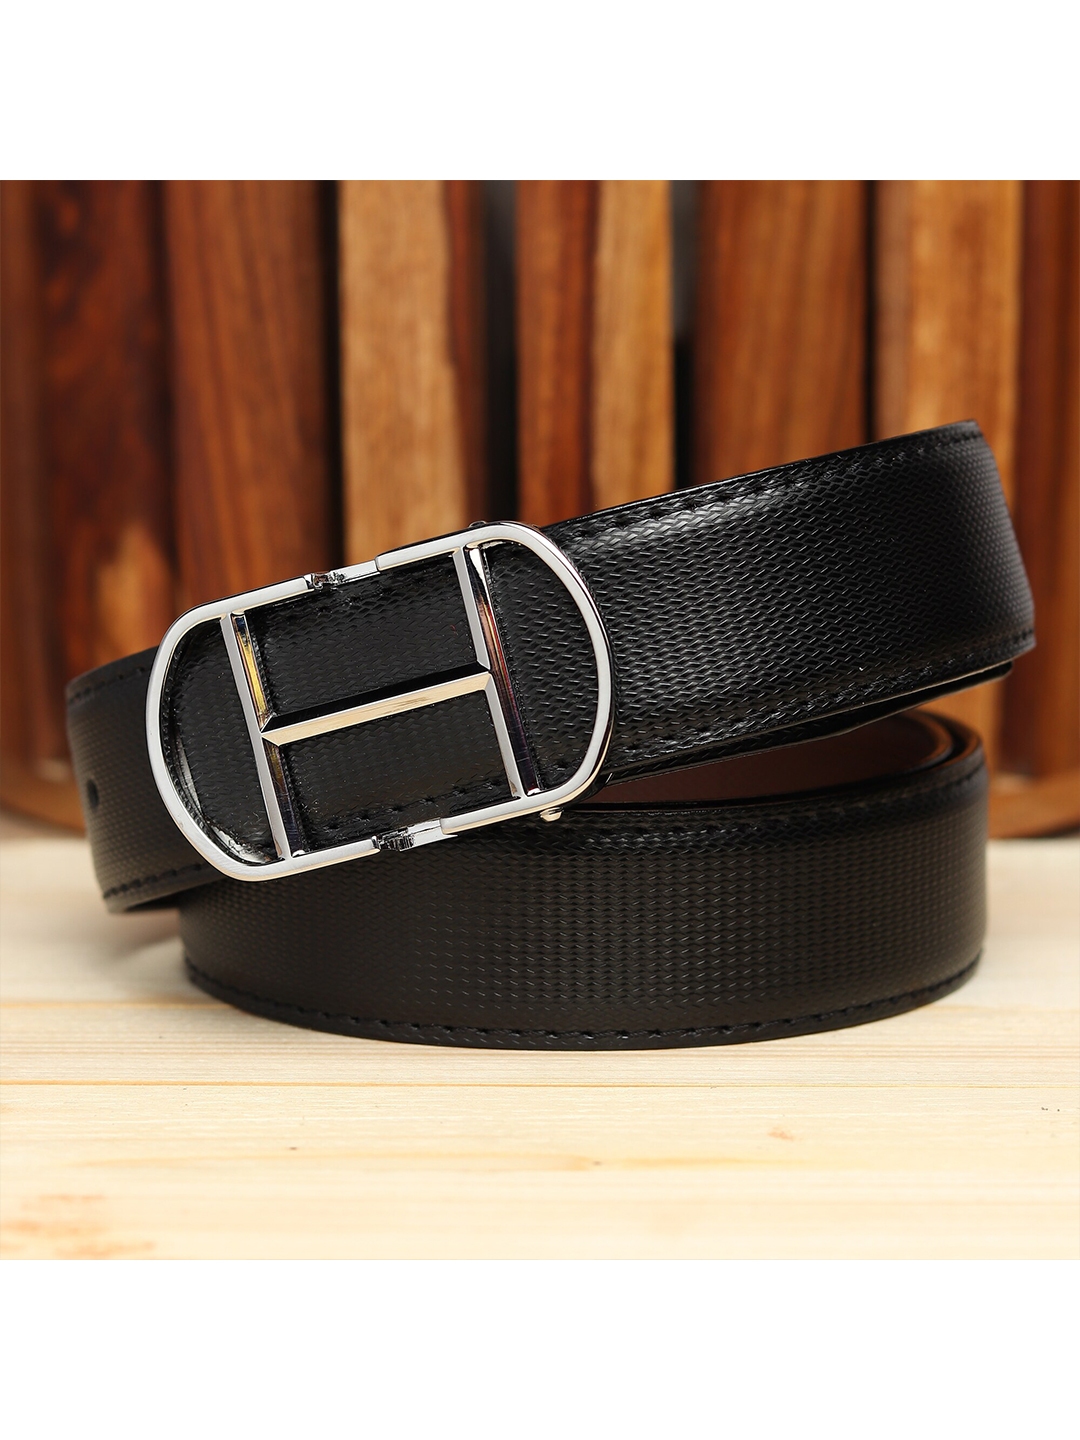 Buy Kastner Men Brown Belt - Belts for Men 17490544 | Myntra